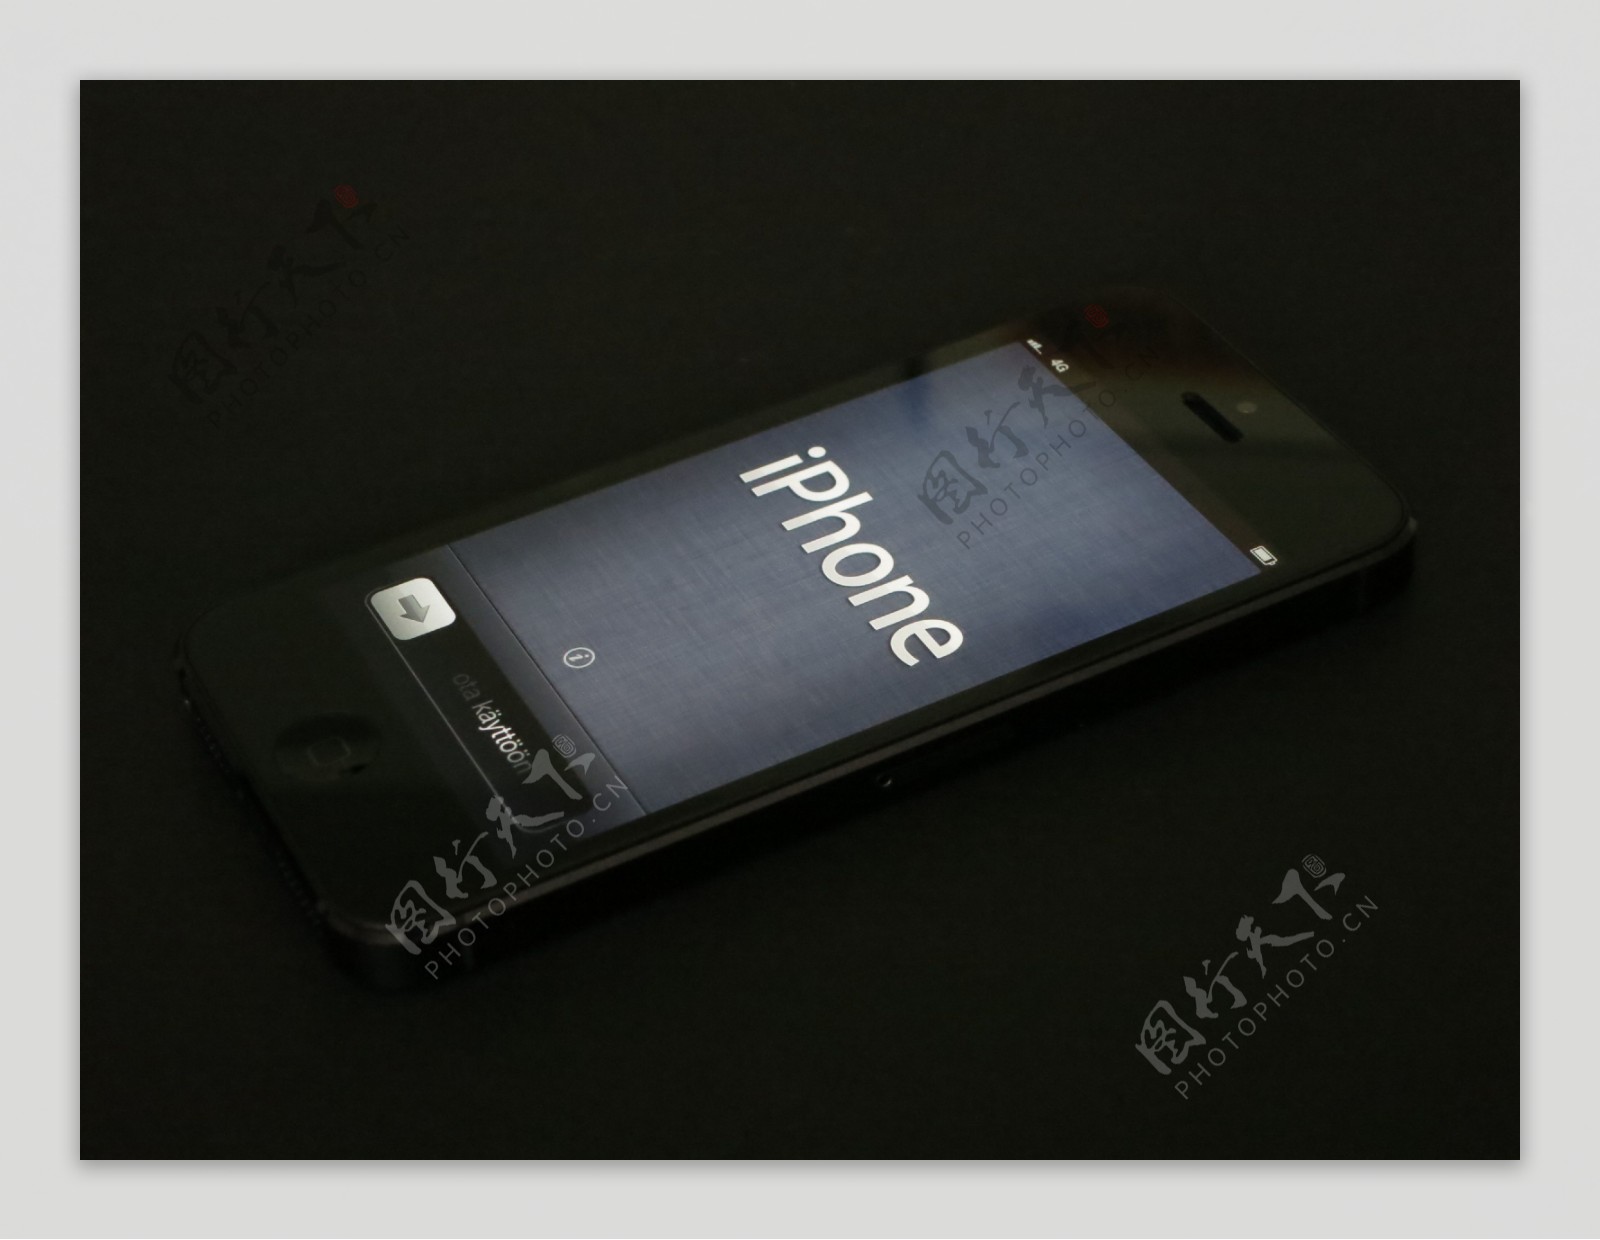 黑色iphone5图片